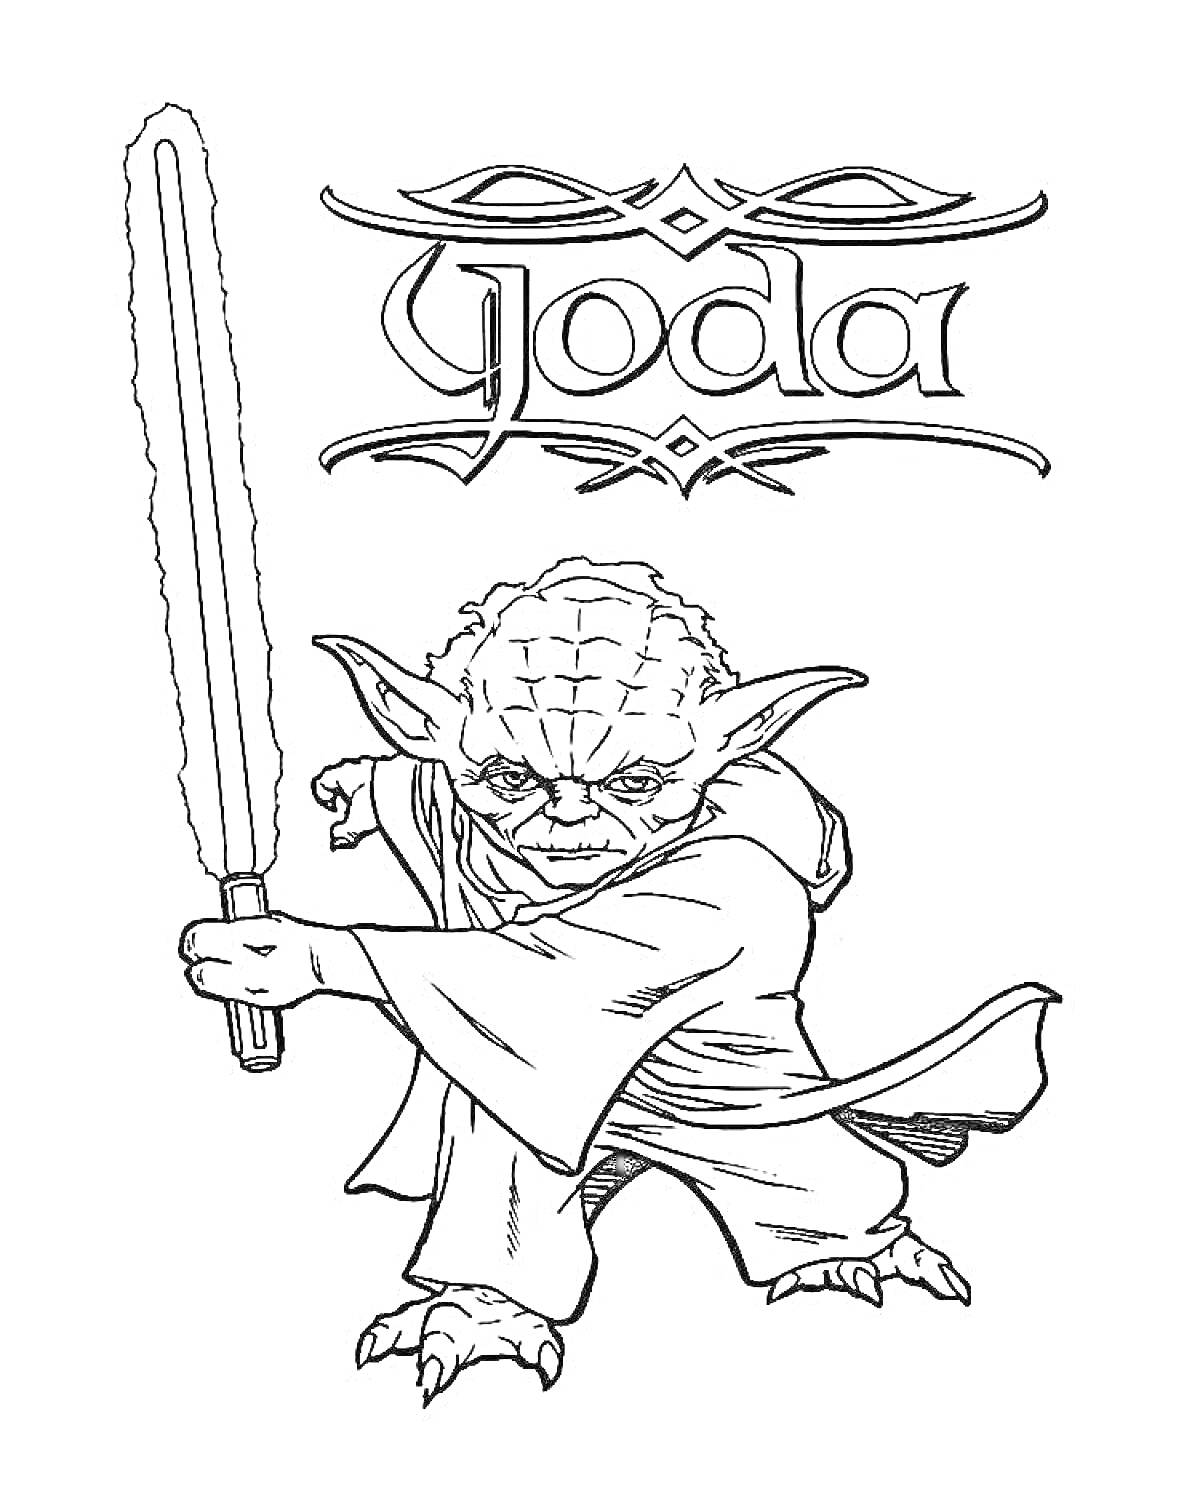 Йода, стоящий с поднятым мечом, украшенный шрифтом